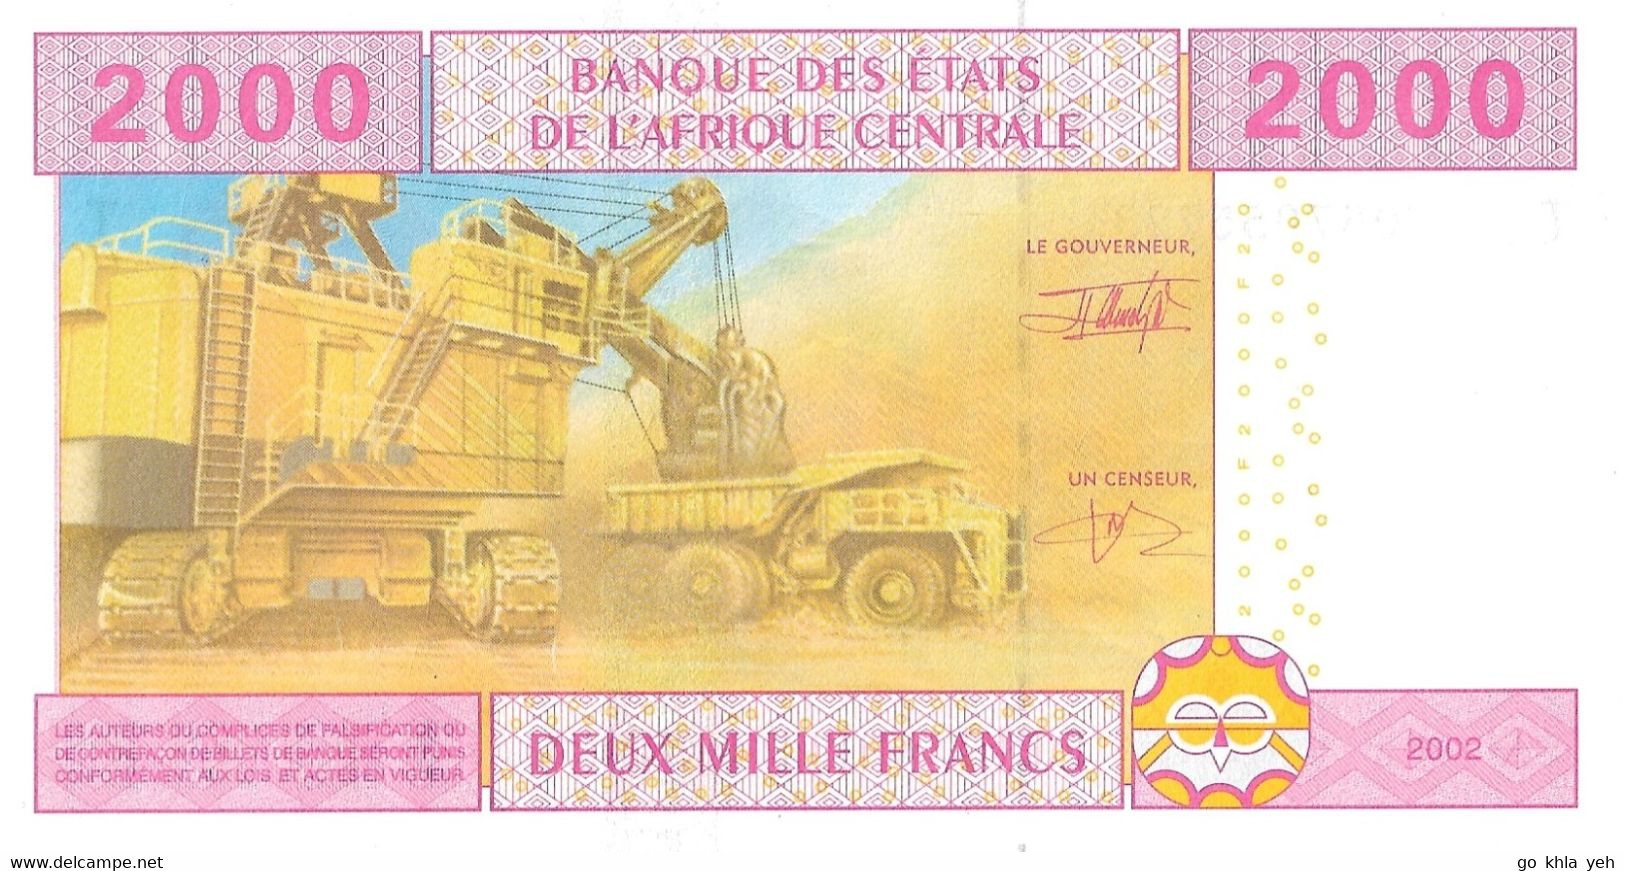 ETATS D'AFRIQUE CENTRALE - REPUBLIQUE DU CONGO 2002 2000 Franc - P.108Ta  Neuf UNC - Centraal-Afrikaanse Staten